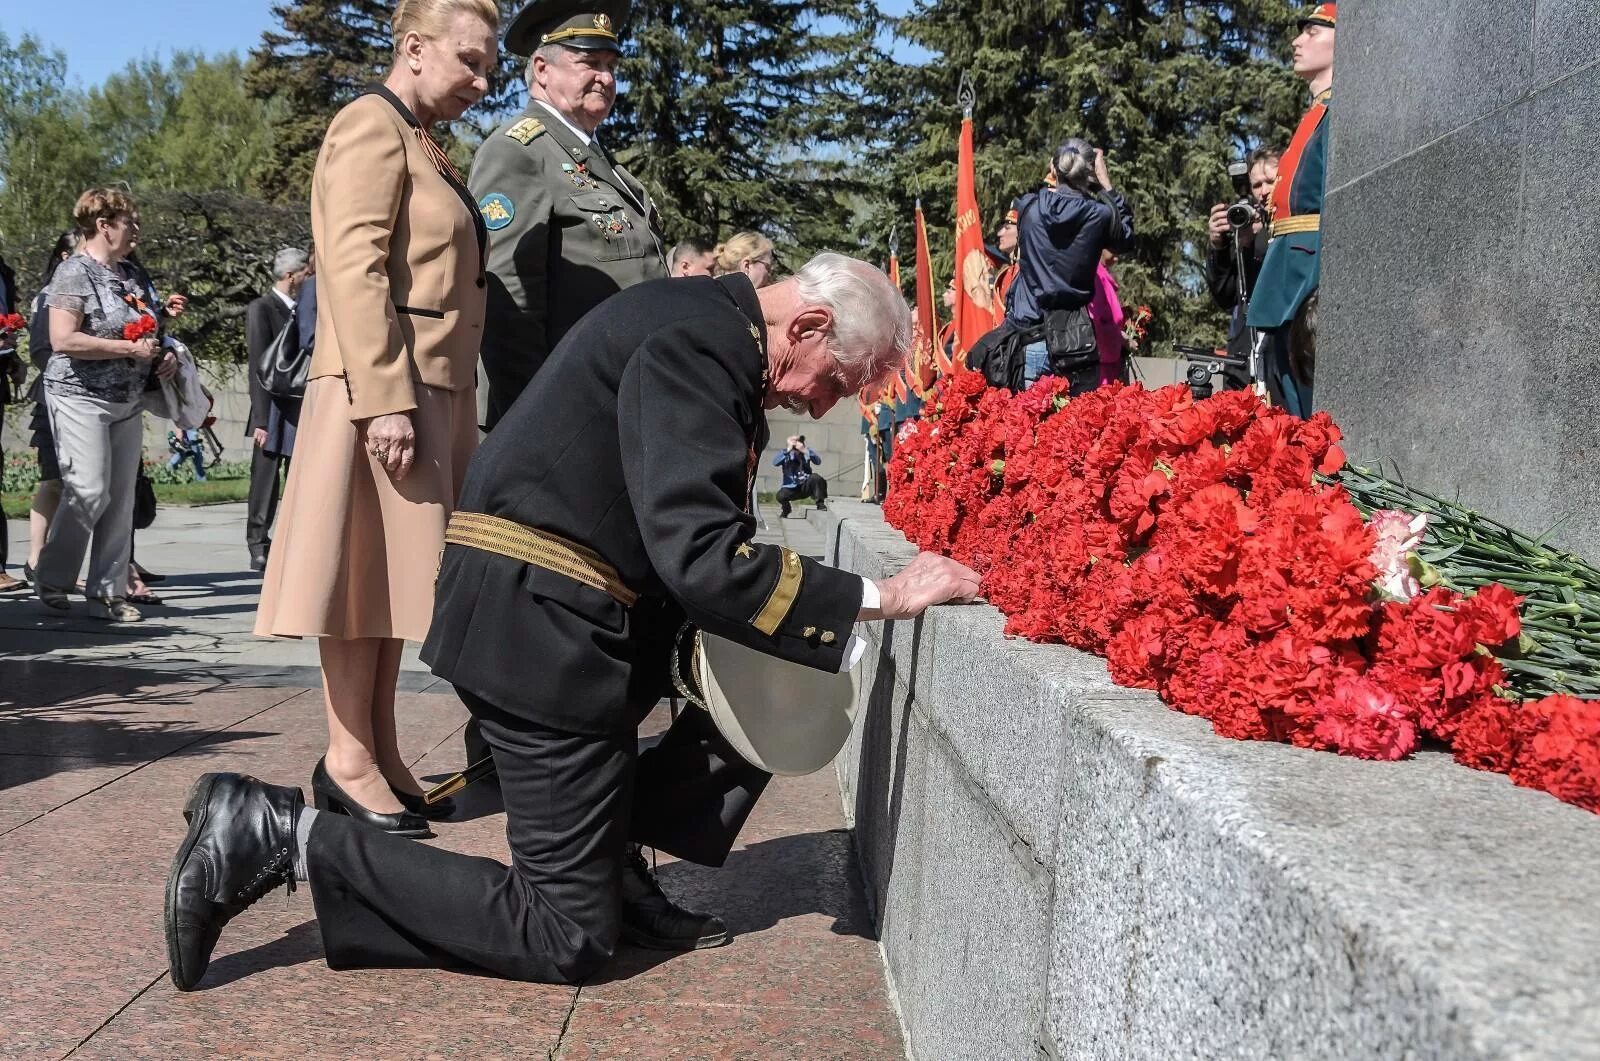 9 май ютуб. Ветеран на коленях. Ветераны возлагают цветы к Вечному огню. Памятник 9 мая. С днем Победы.